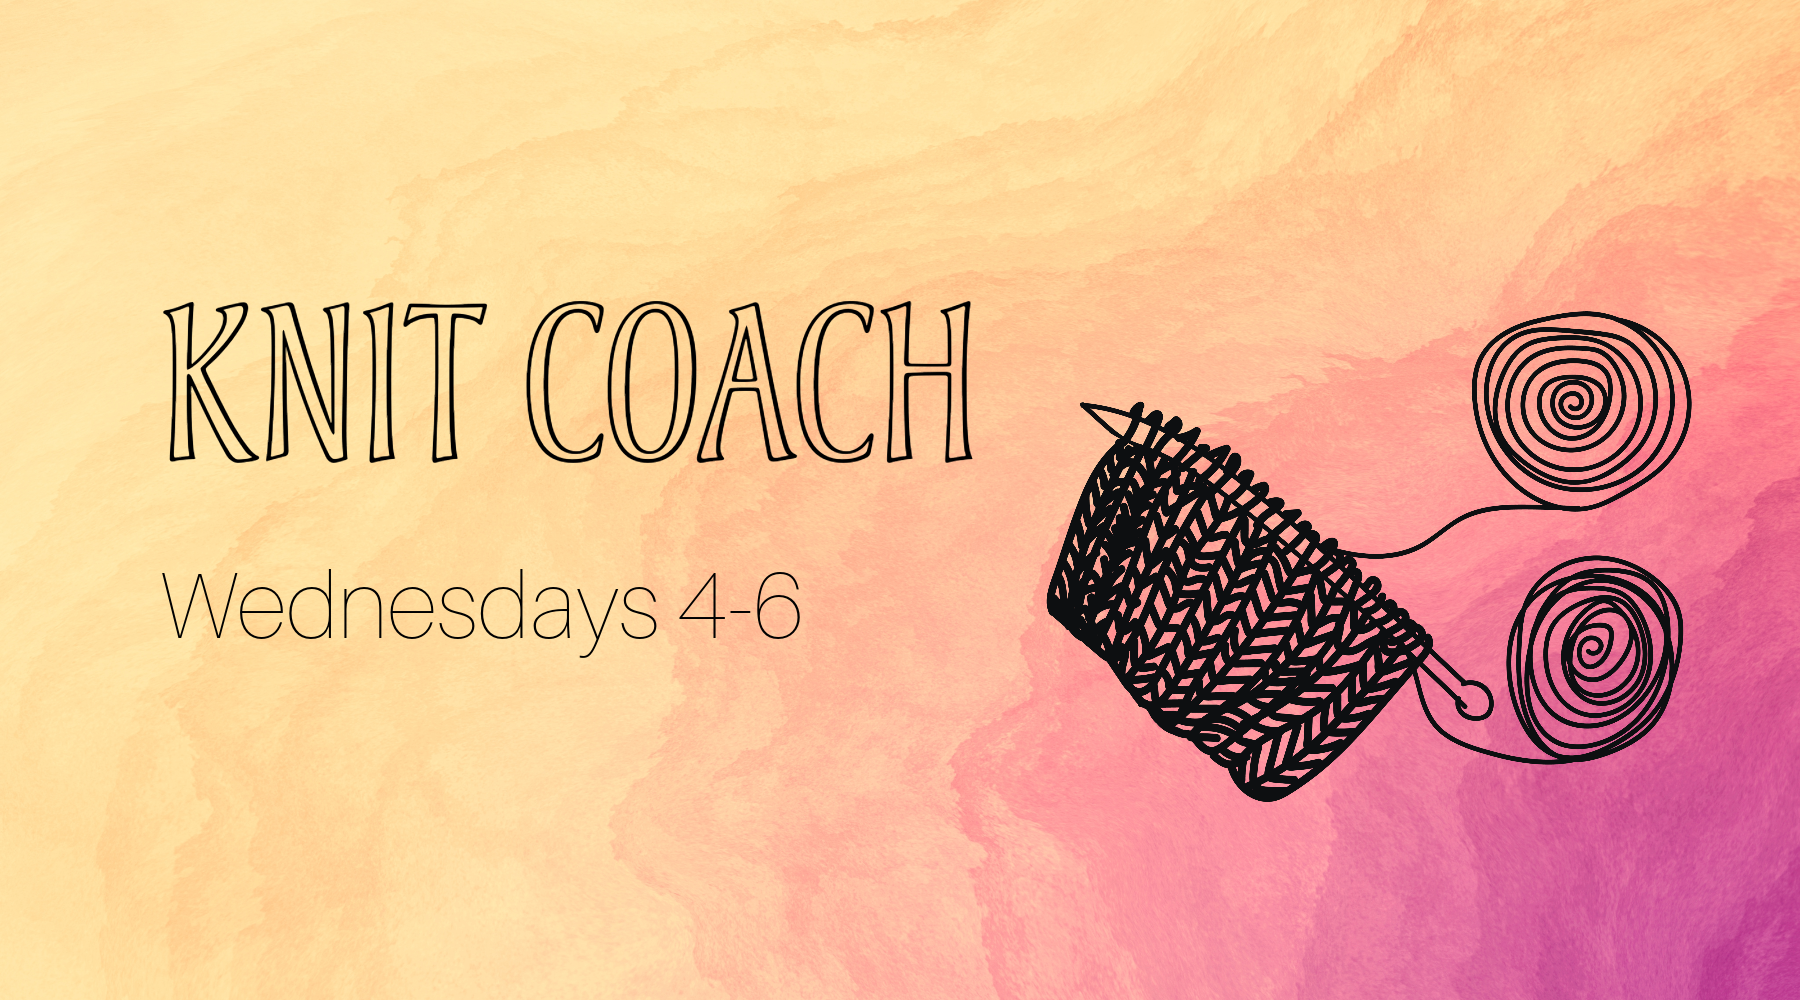 Knit Coach: Wednesdays 4-6